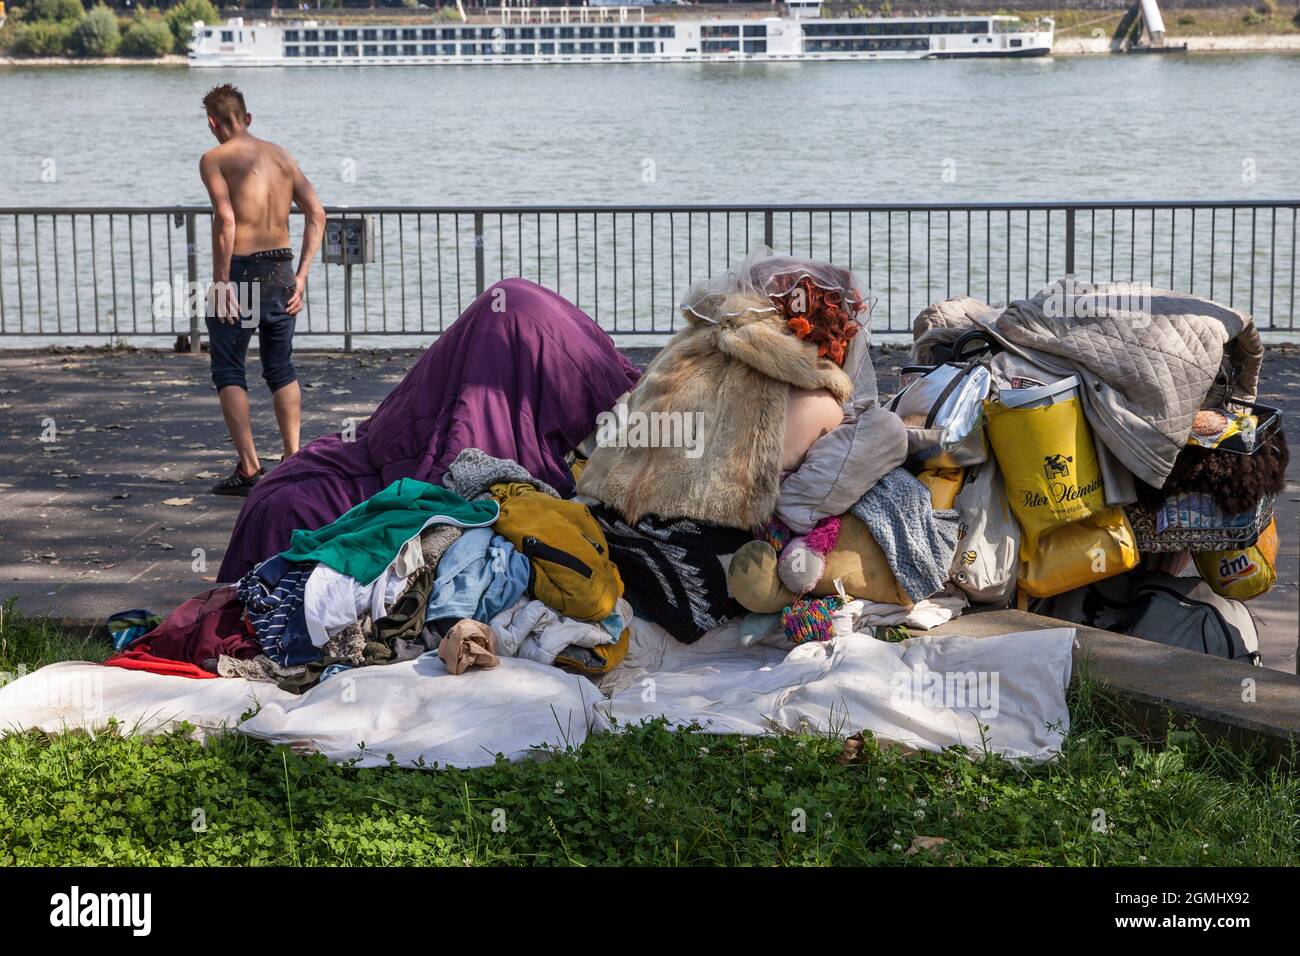 Senzatetto con i loro possedimenti sulle rive del Reno, Colonia, Germania. Un uomo senza camicia, una donna si accoccola con un mantello di pelliccia sulla sua borsa Foto Stock